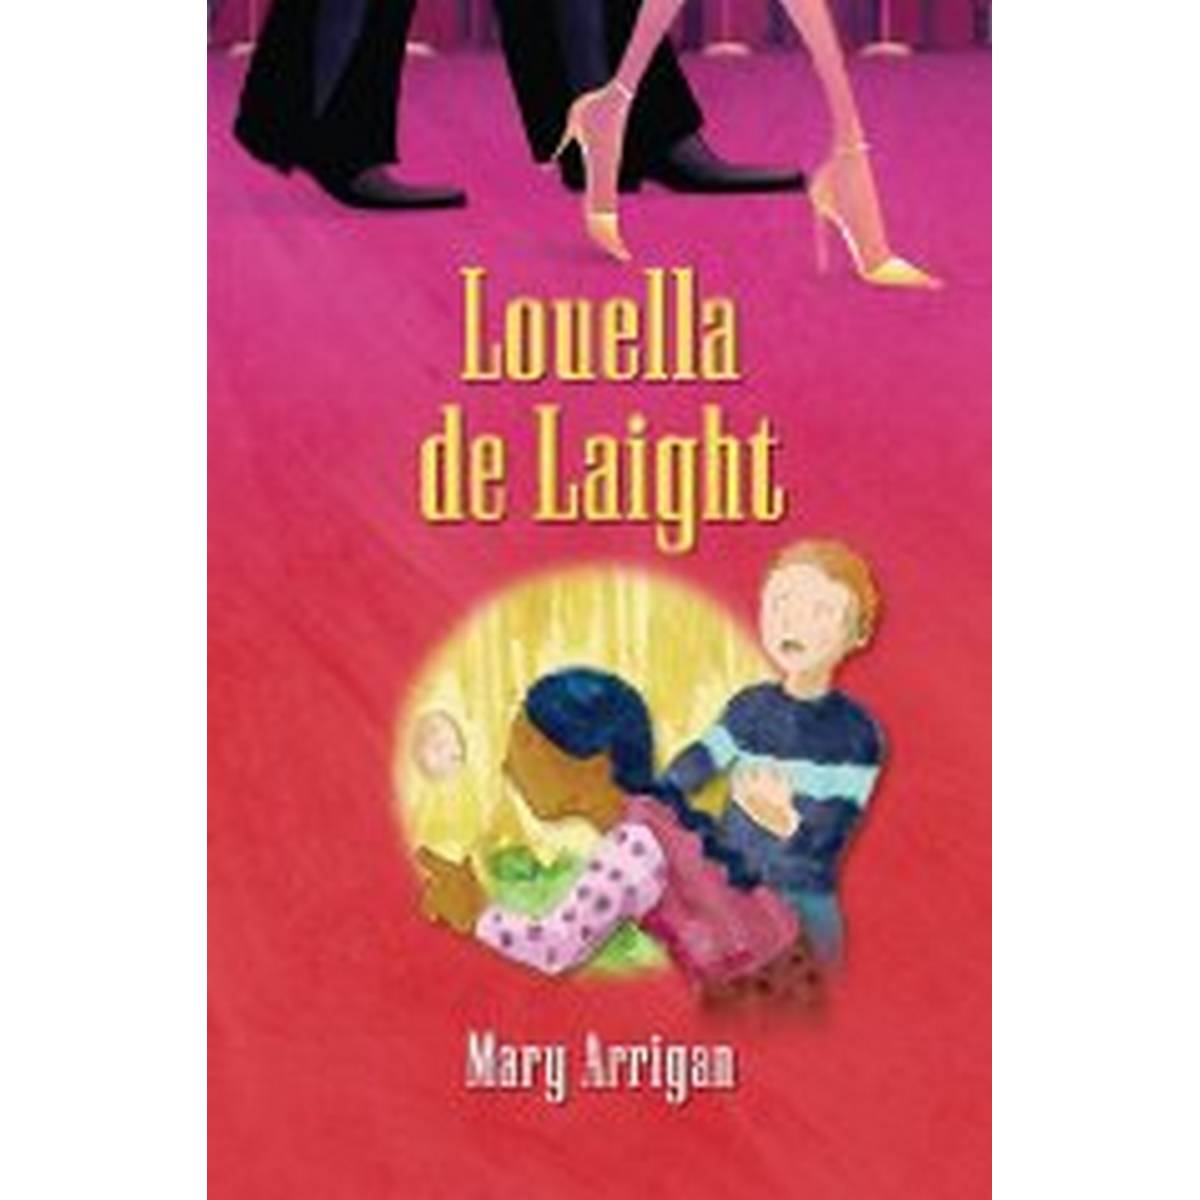 Louella De Laight